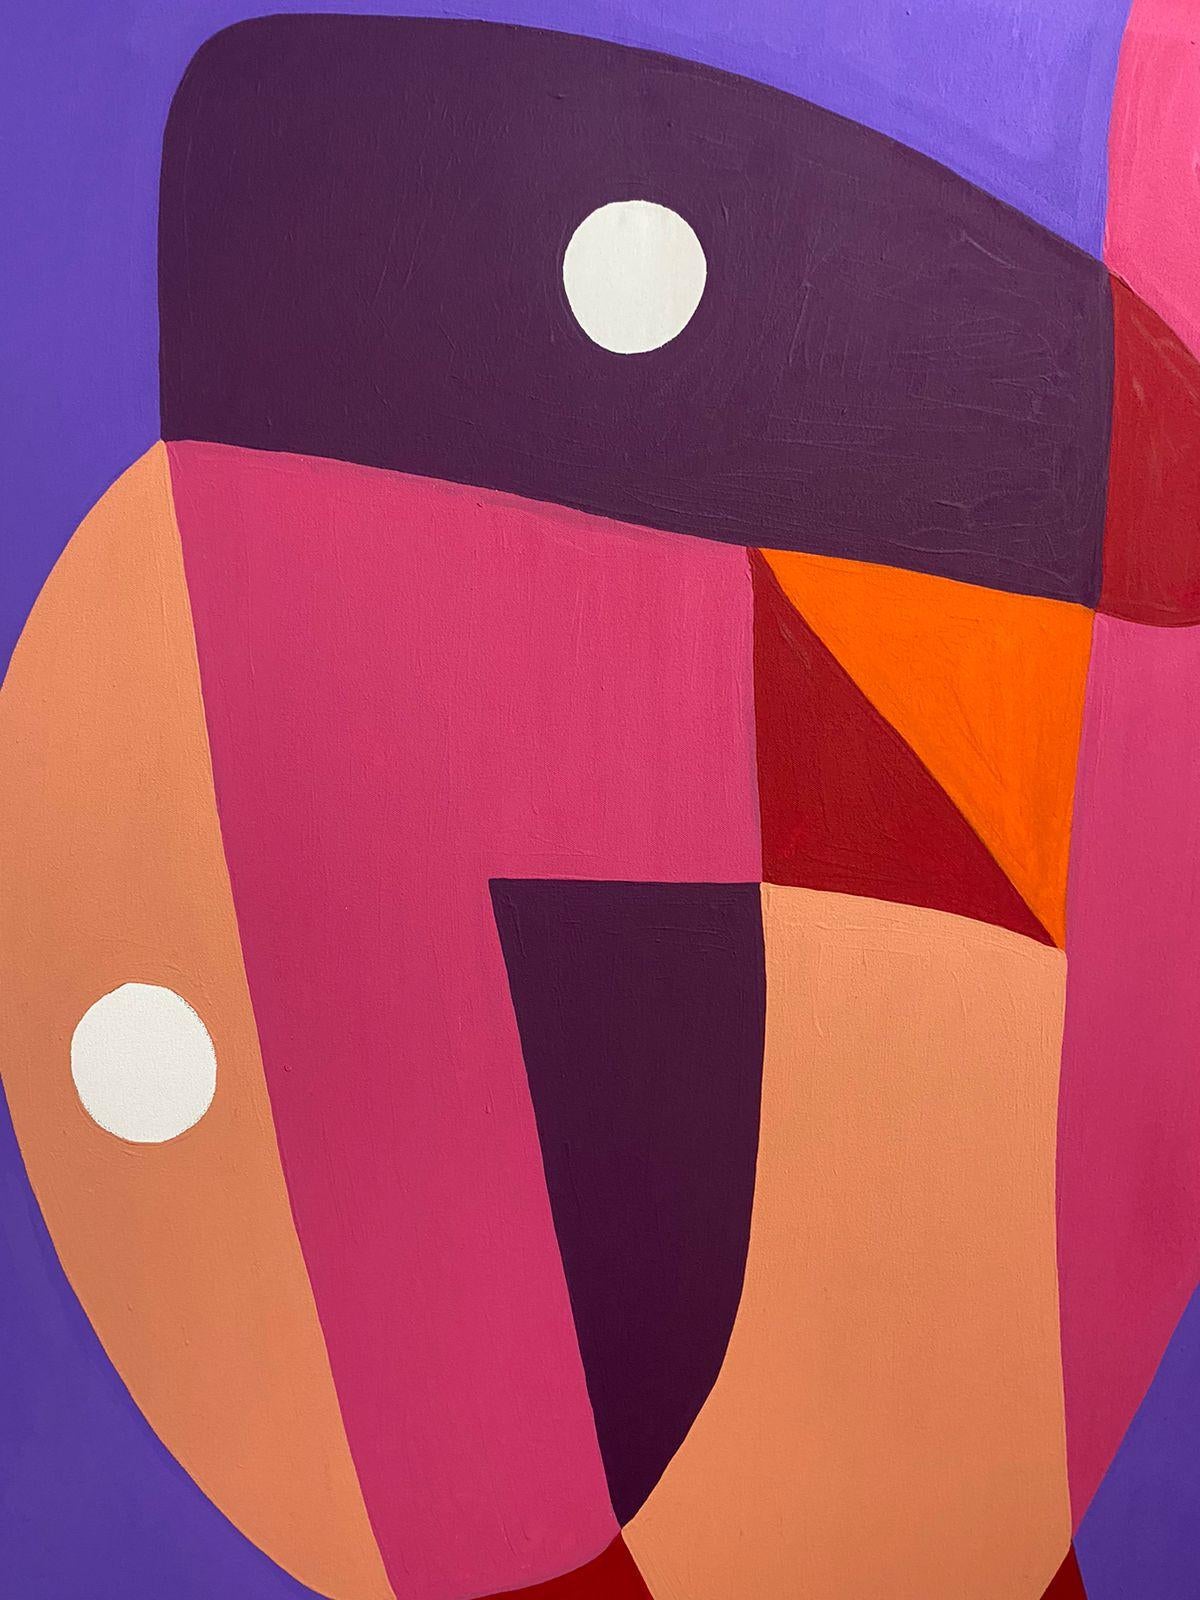 Cuerpo I, Art contemporain, Peinture abstraite, 21ème siècle - Abstrait Painting par Enrique Pichardo